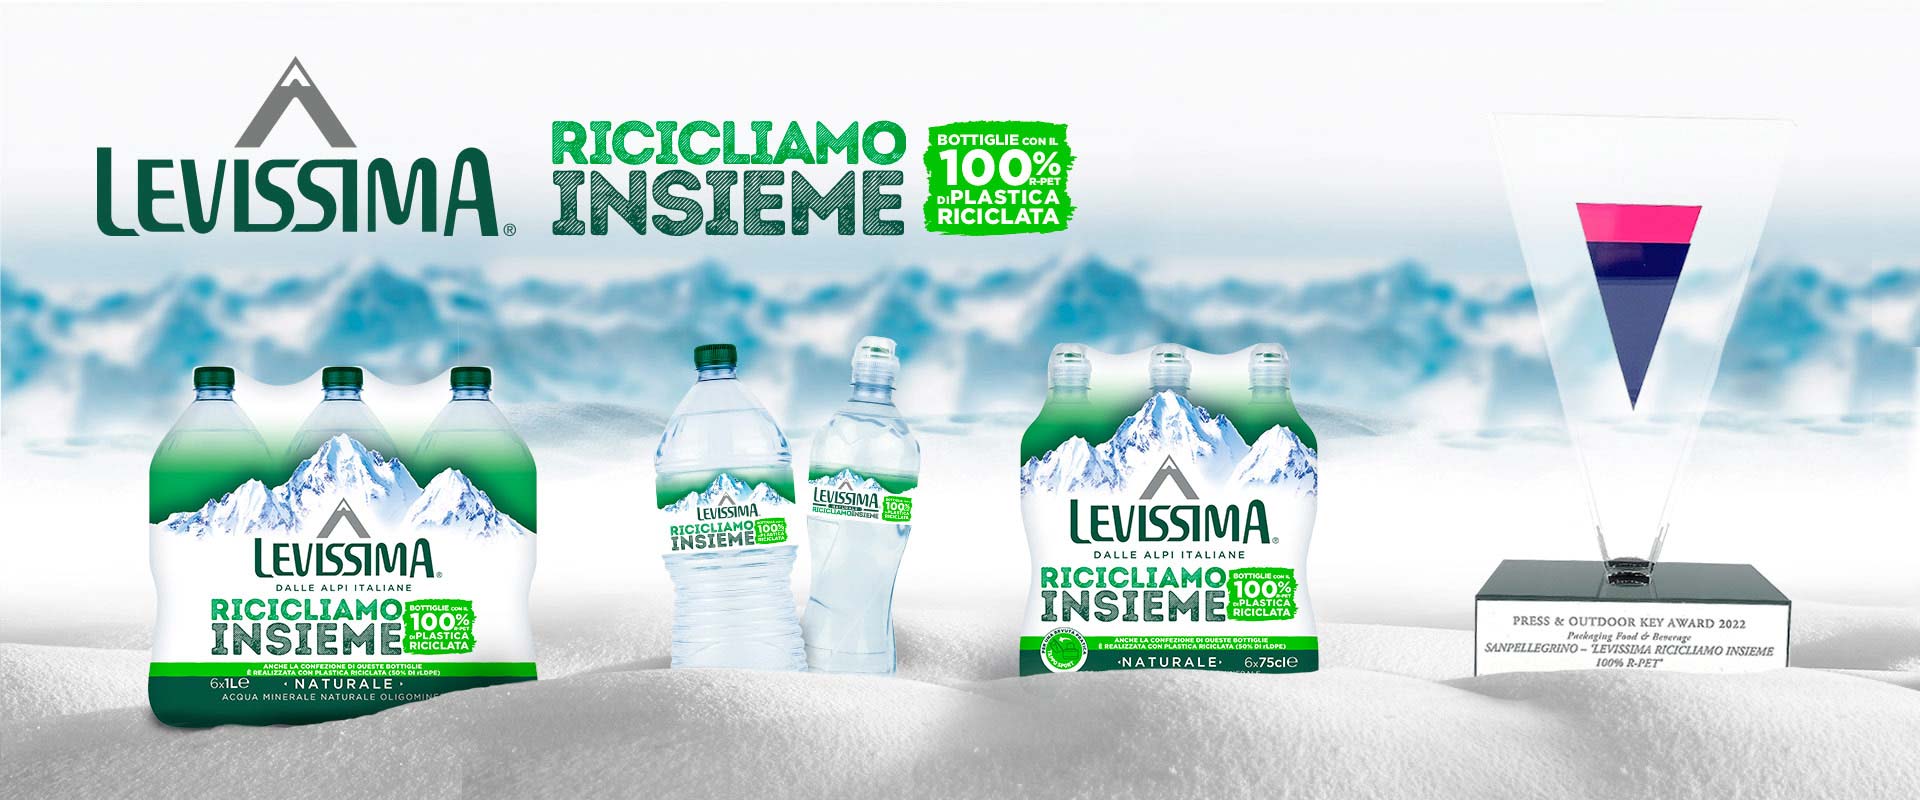 Il progetto sostenibile Ricicliamo Insieme di Levissima vince il Key Award 2022 nella categoria packaging grazie al redesign di etichette e fardelli ad opera di ATC